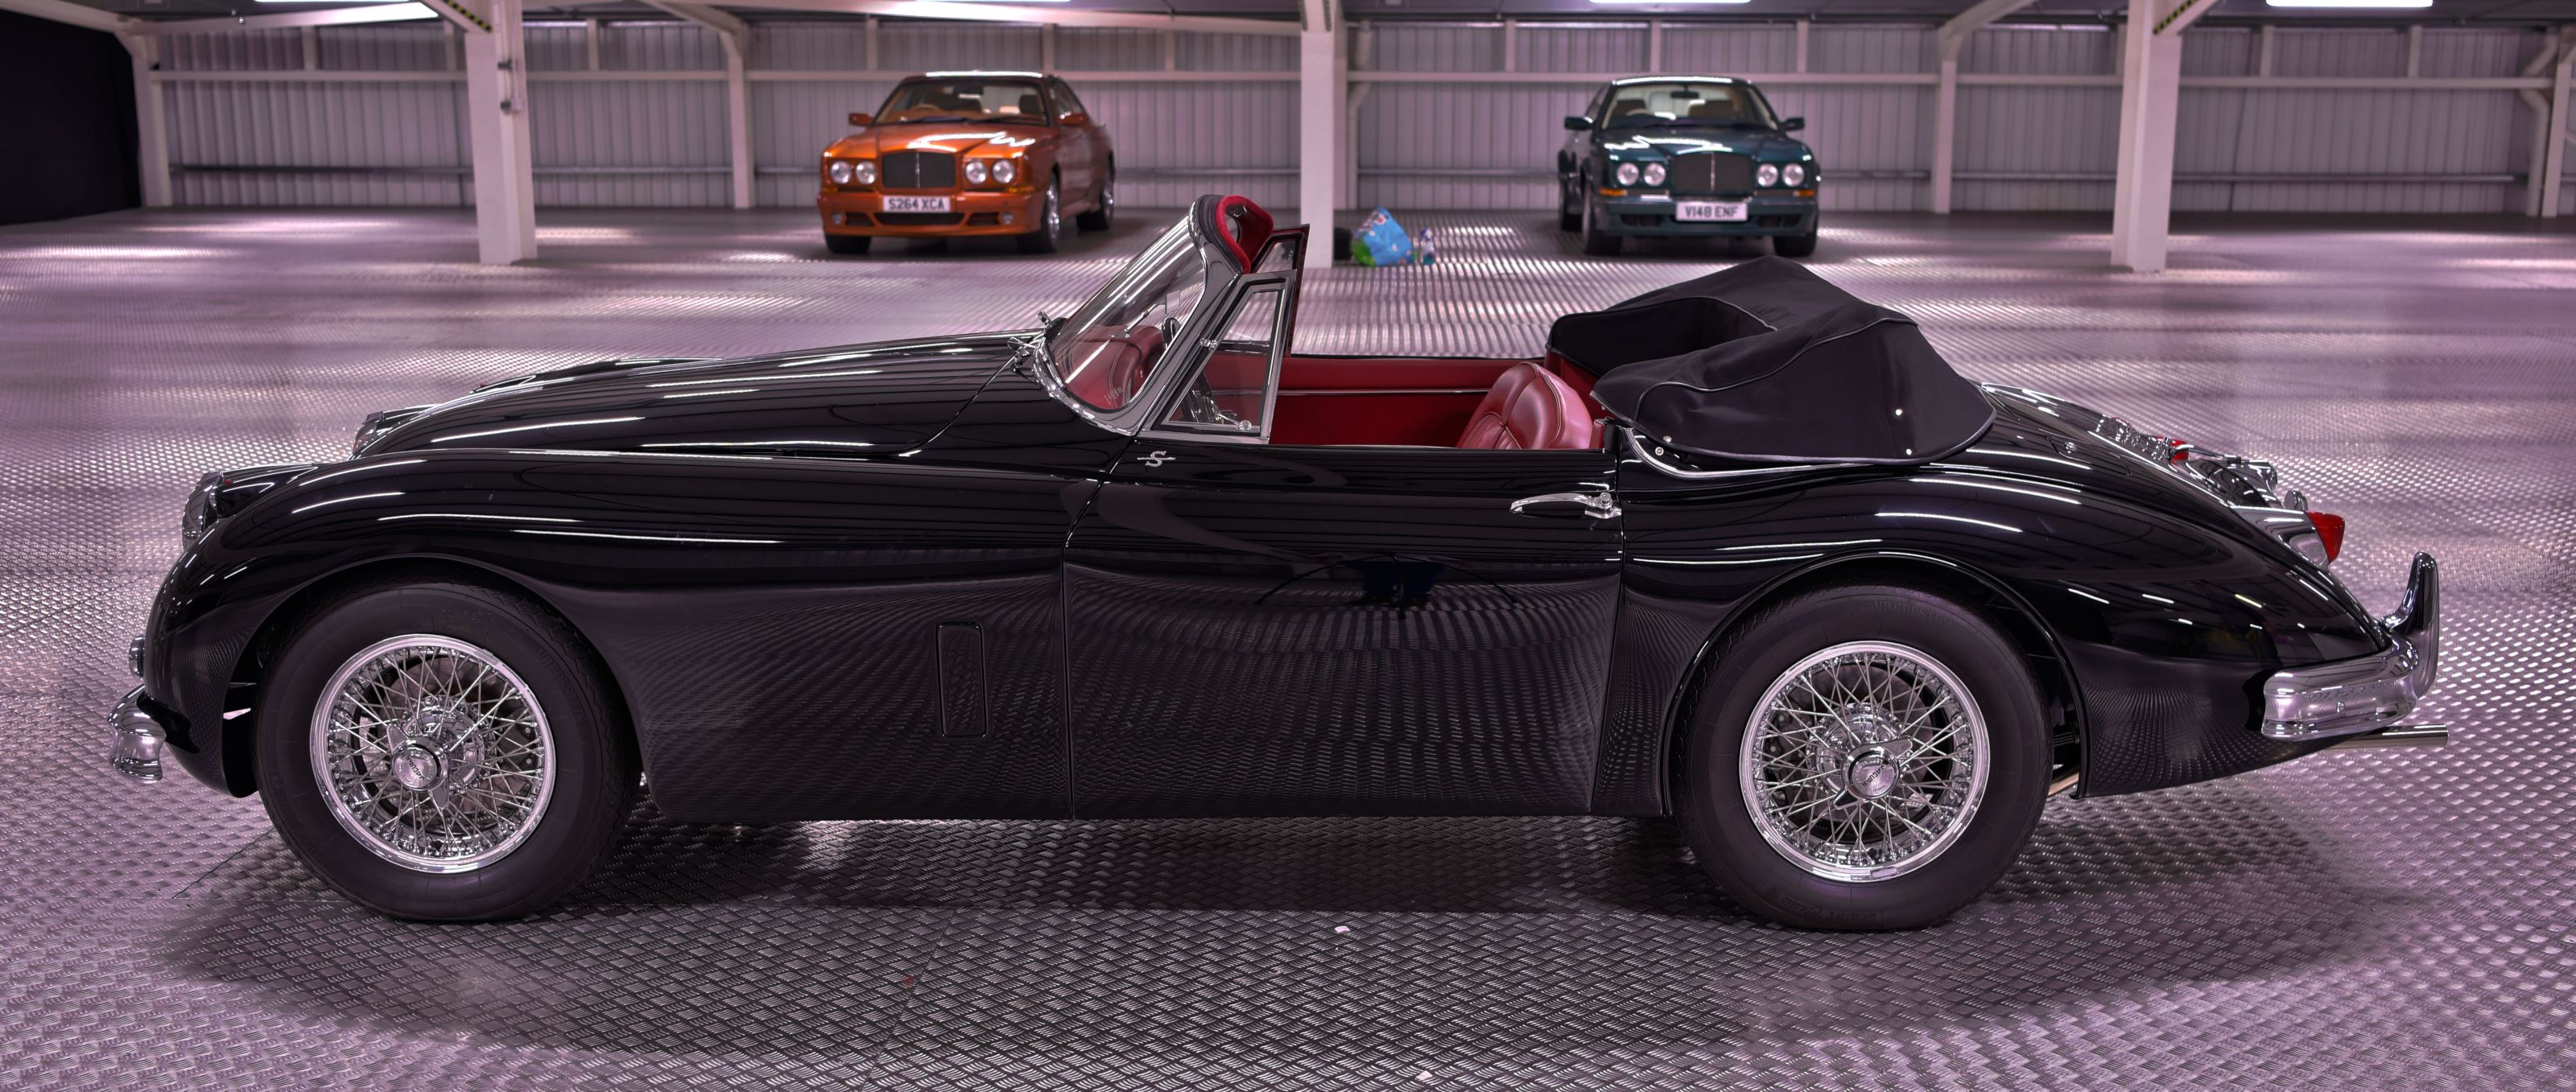 Jaguar xk150s 3.4 litre dhc left hand drive 22qh9uo1ivo8mcichavmg